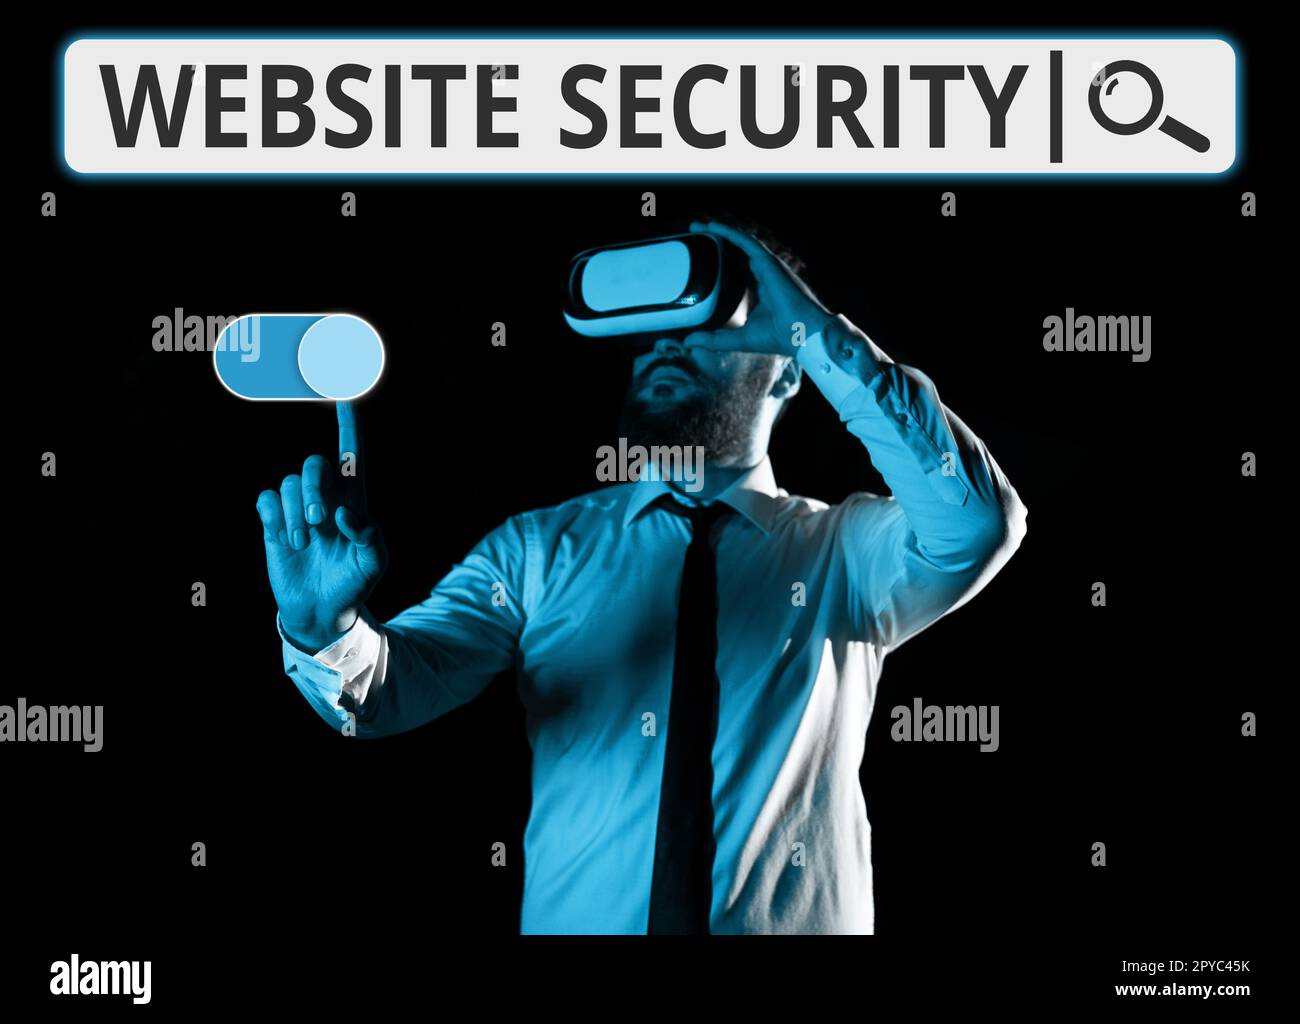 Visualizzazione concettuale sicurezza del sito web. Componente critico per la fotografia concettuale per proteggere e proteggere i siti Web Foto Stock